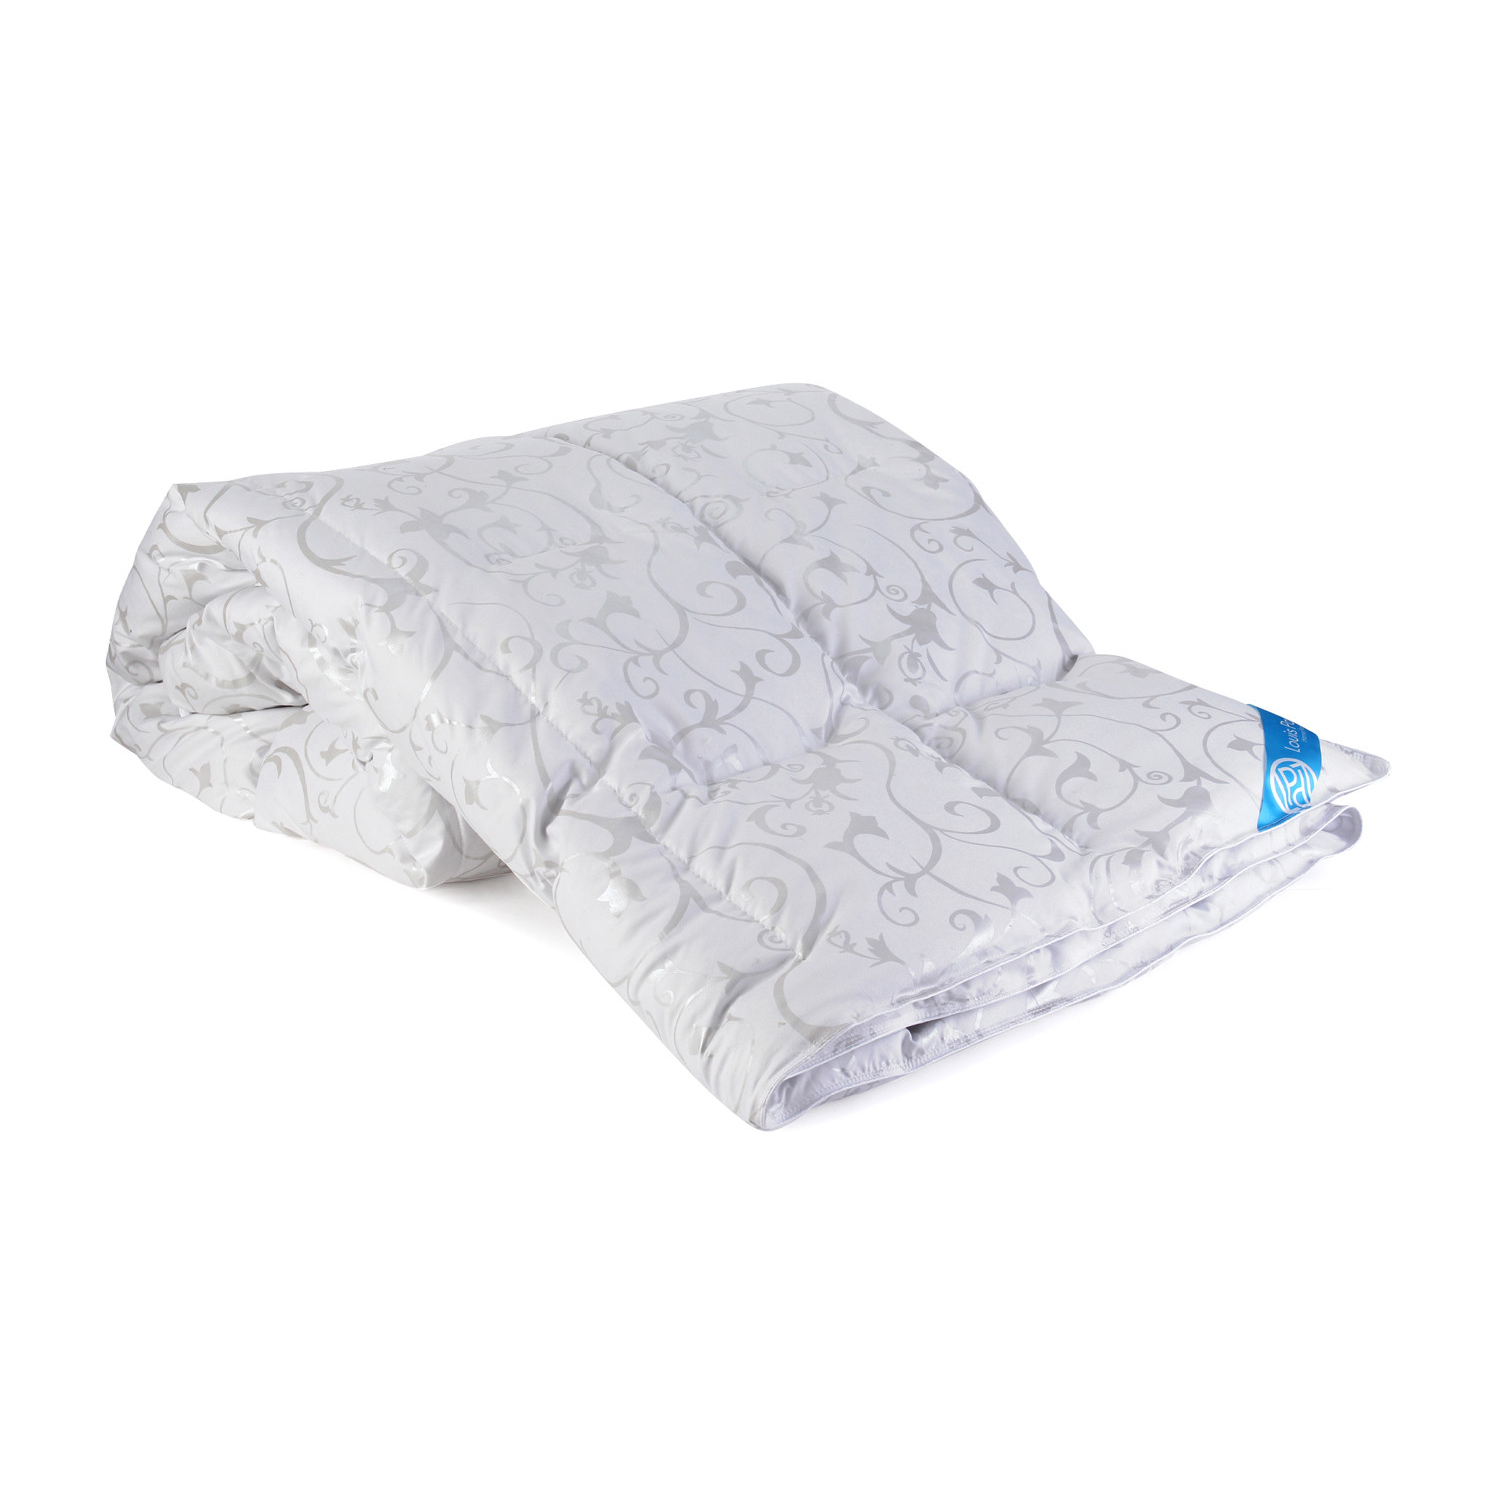 Пуховое одеяло Louis Pascal Эмма белое с серым 140х205 см (ЛП2066) пуховое одеяло louis pascal камилла белое 200х220 см лп2034